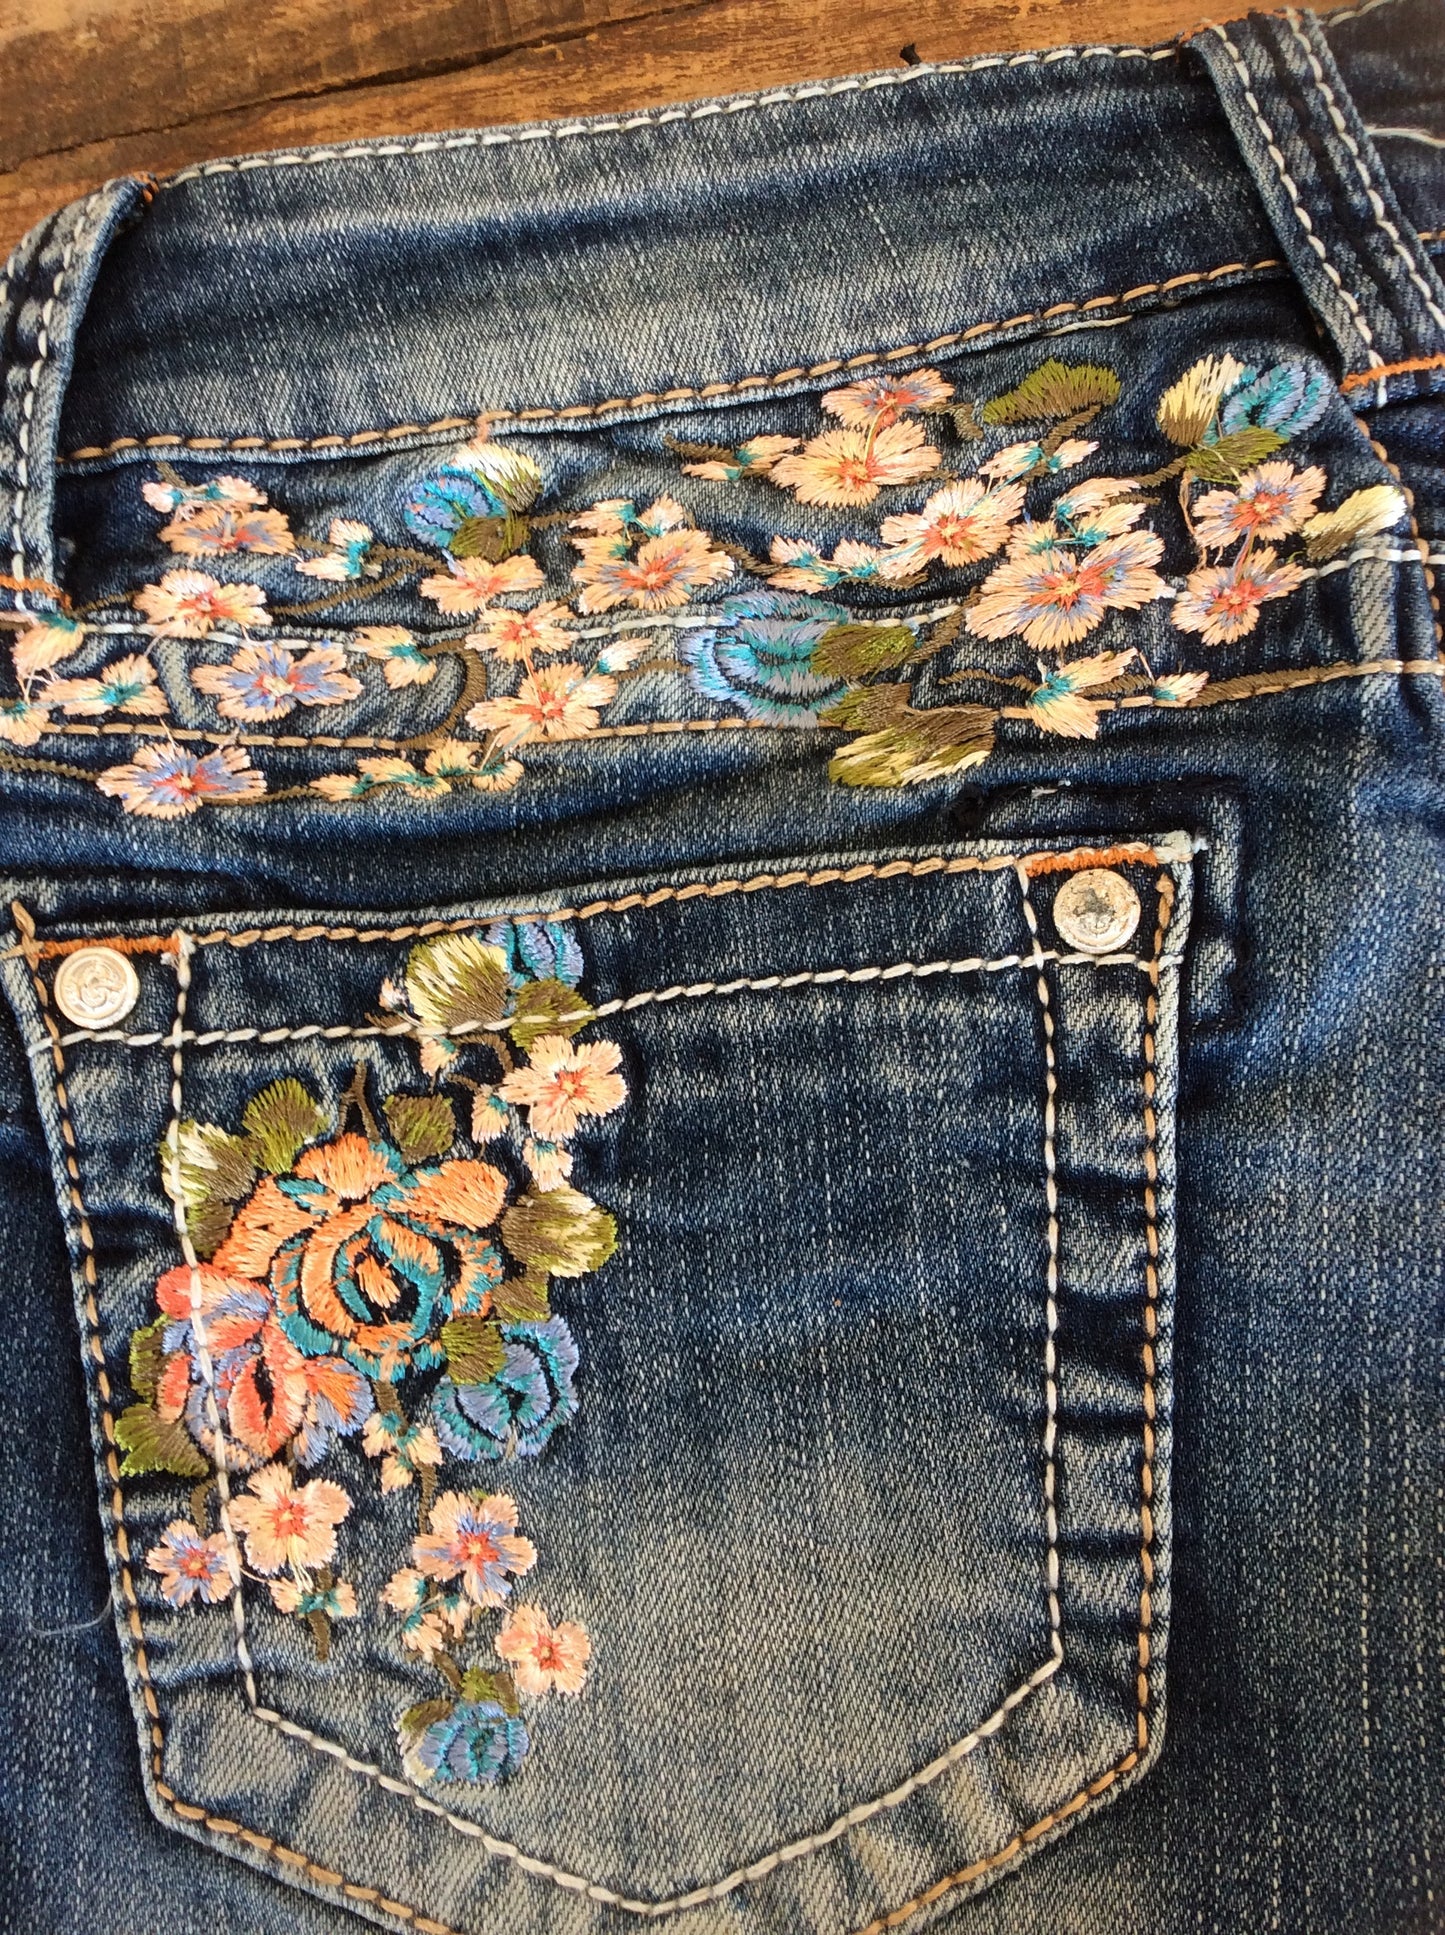 Grace In LA Peach Blossom Embroidered Shorts